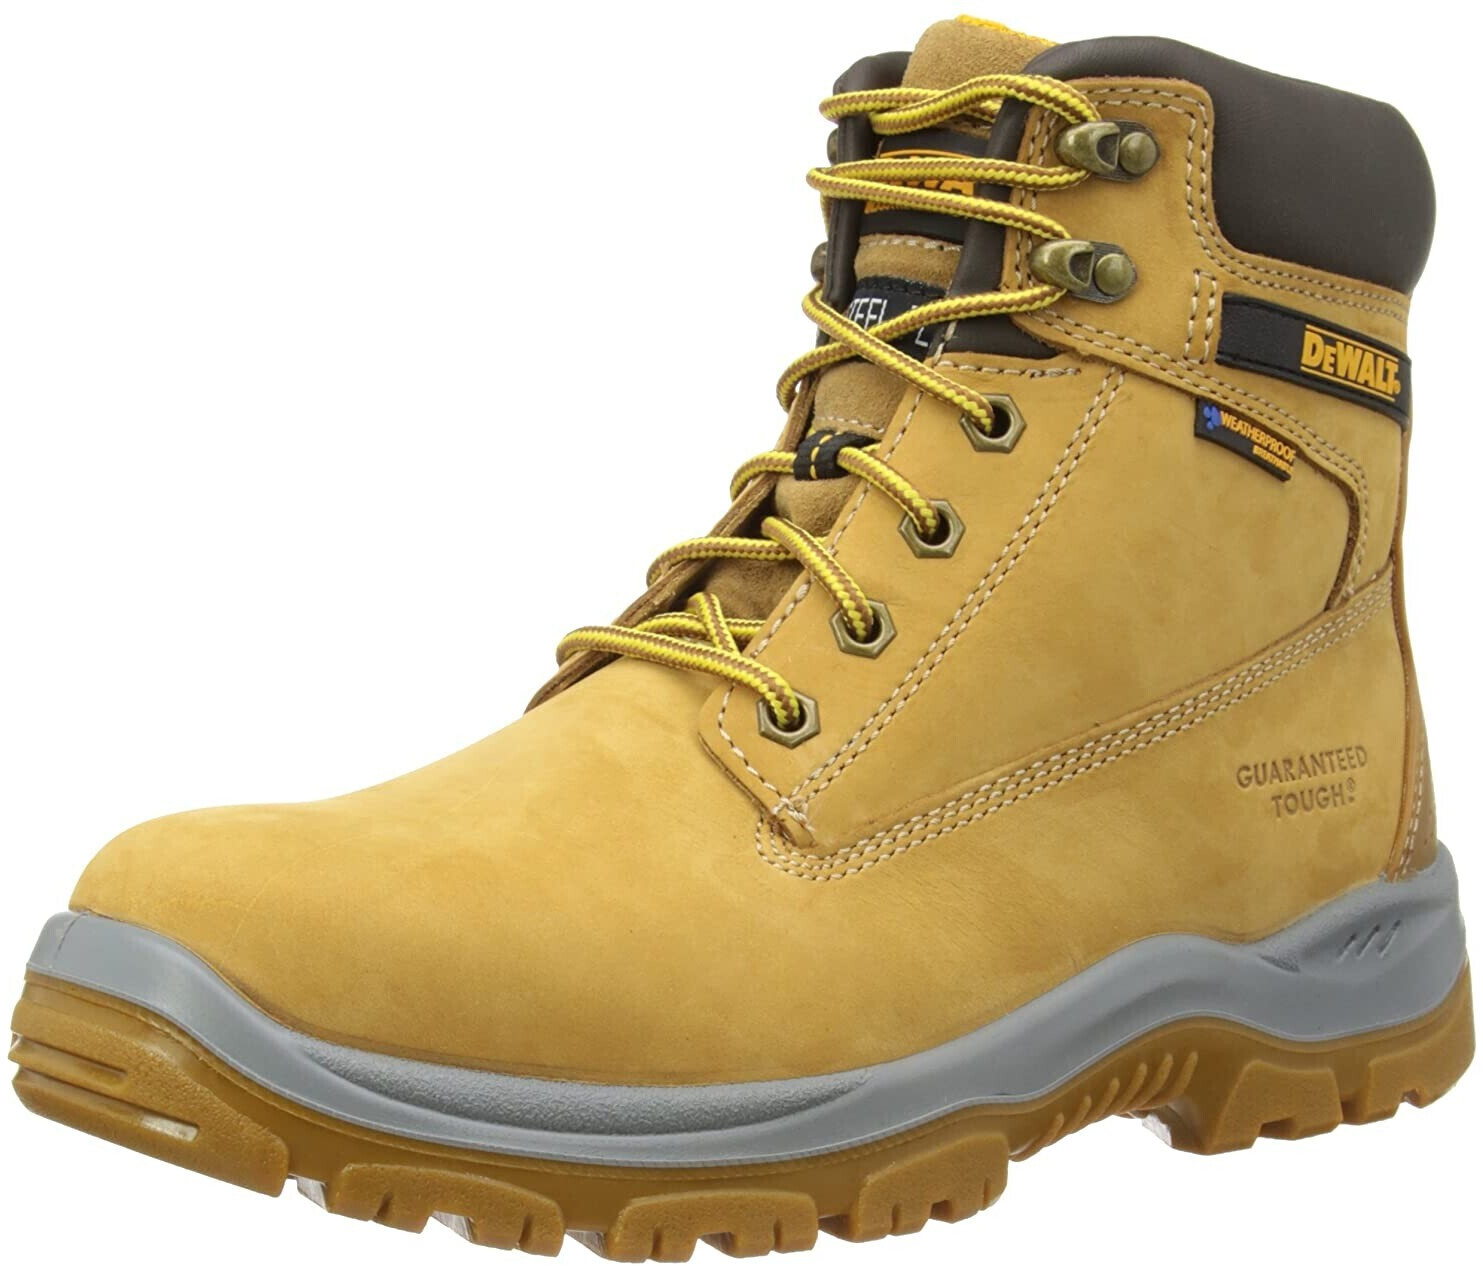 Photos - Safety Equipment DeWALT Men's Titanium Safety Boots Honey 